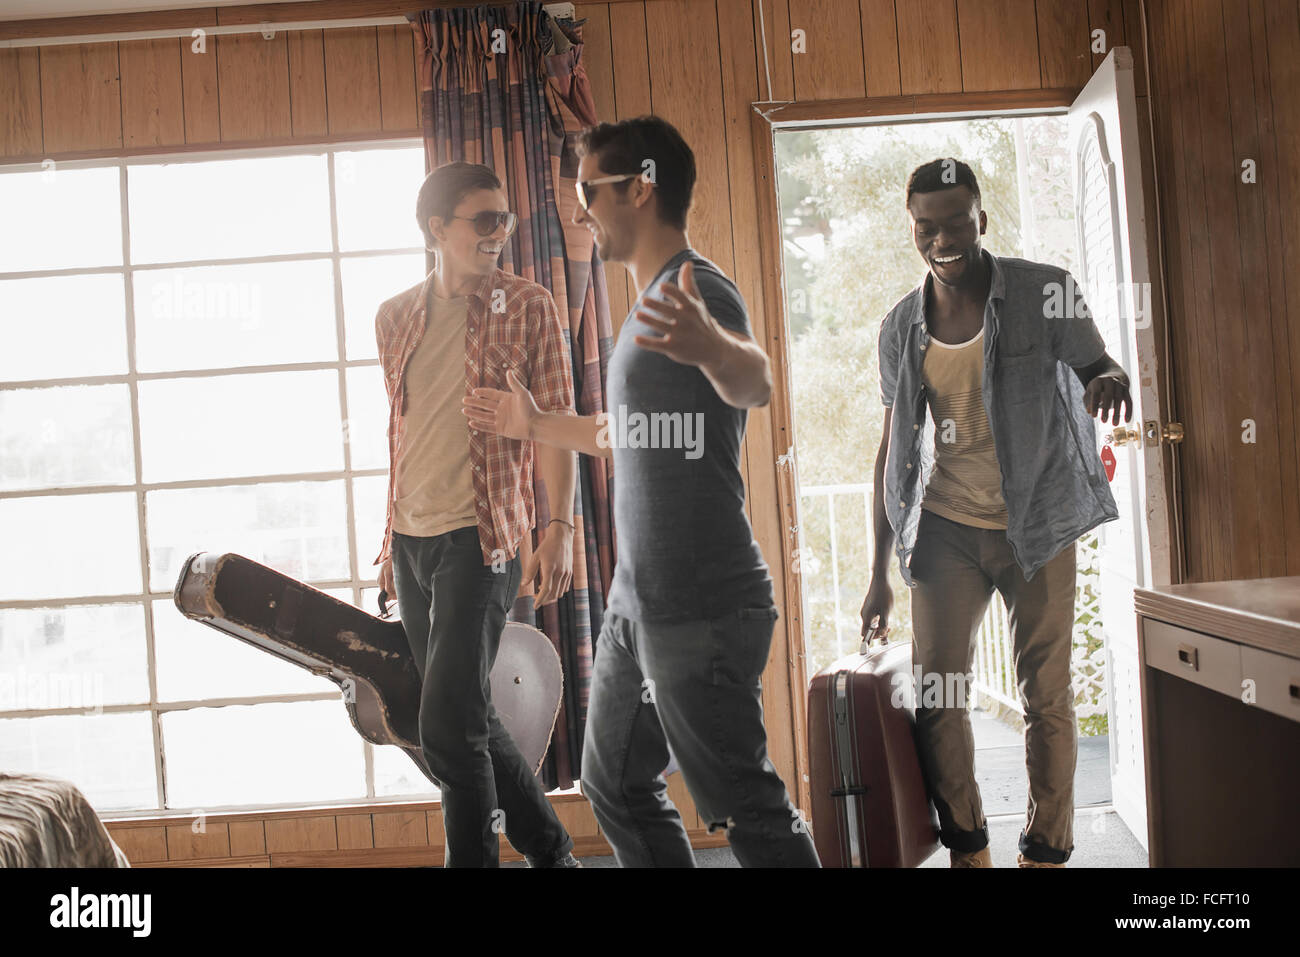 Freunde, drei junge Männer in einem Motelzimmer, Tragetaschen und eine Gitarre. Stockfoto